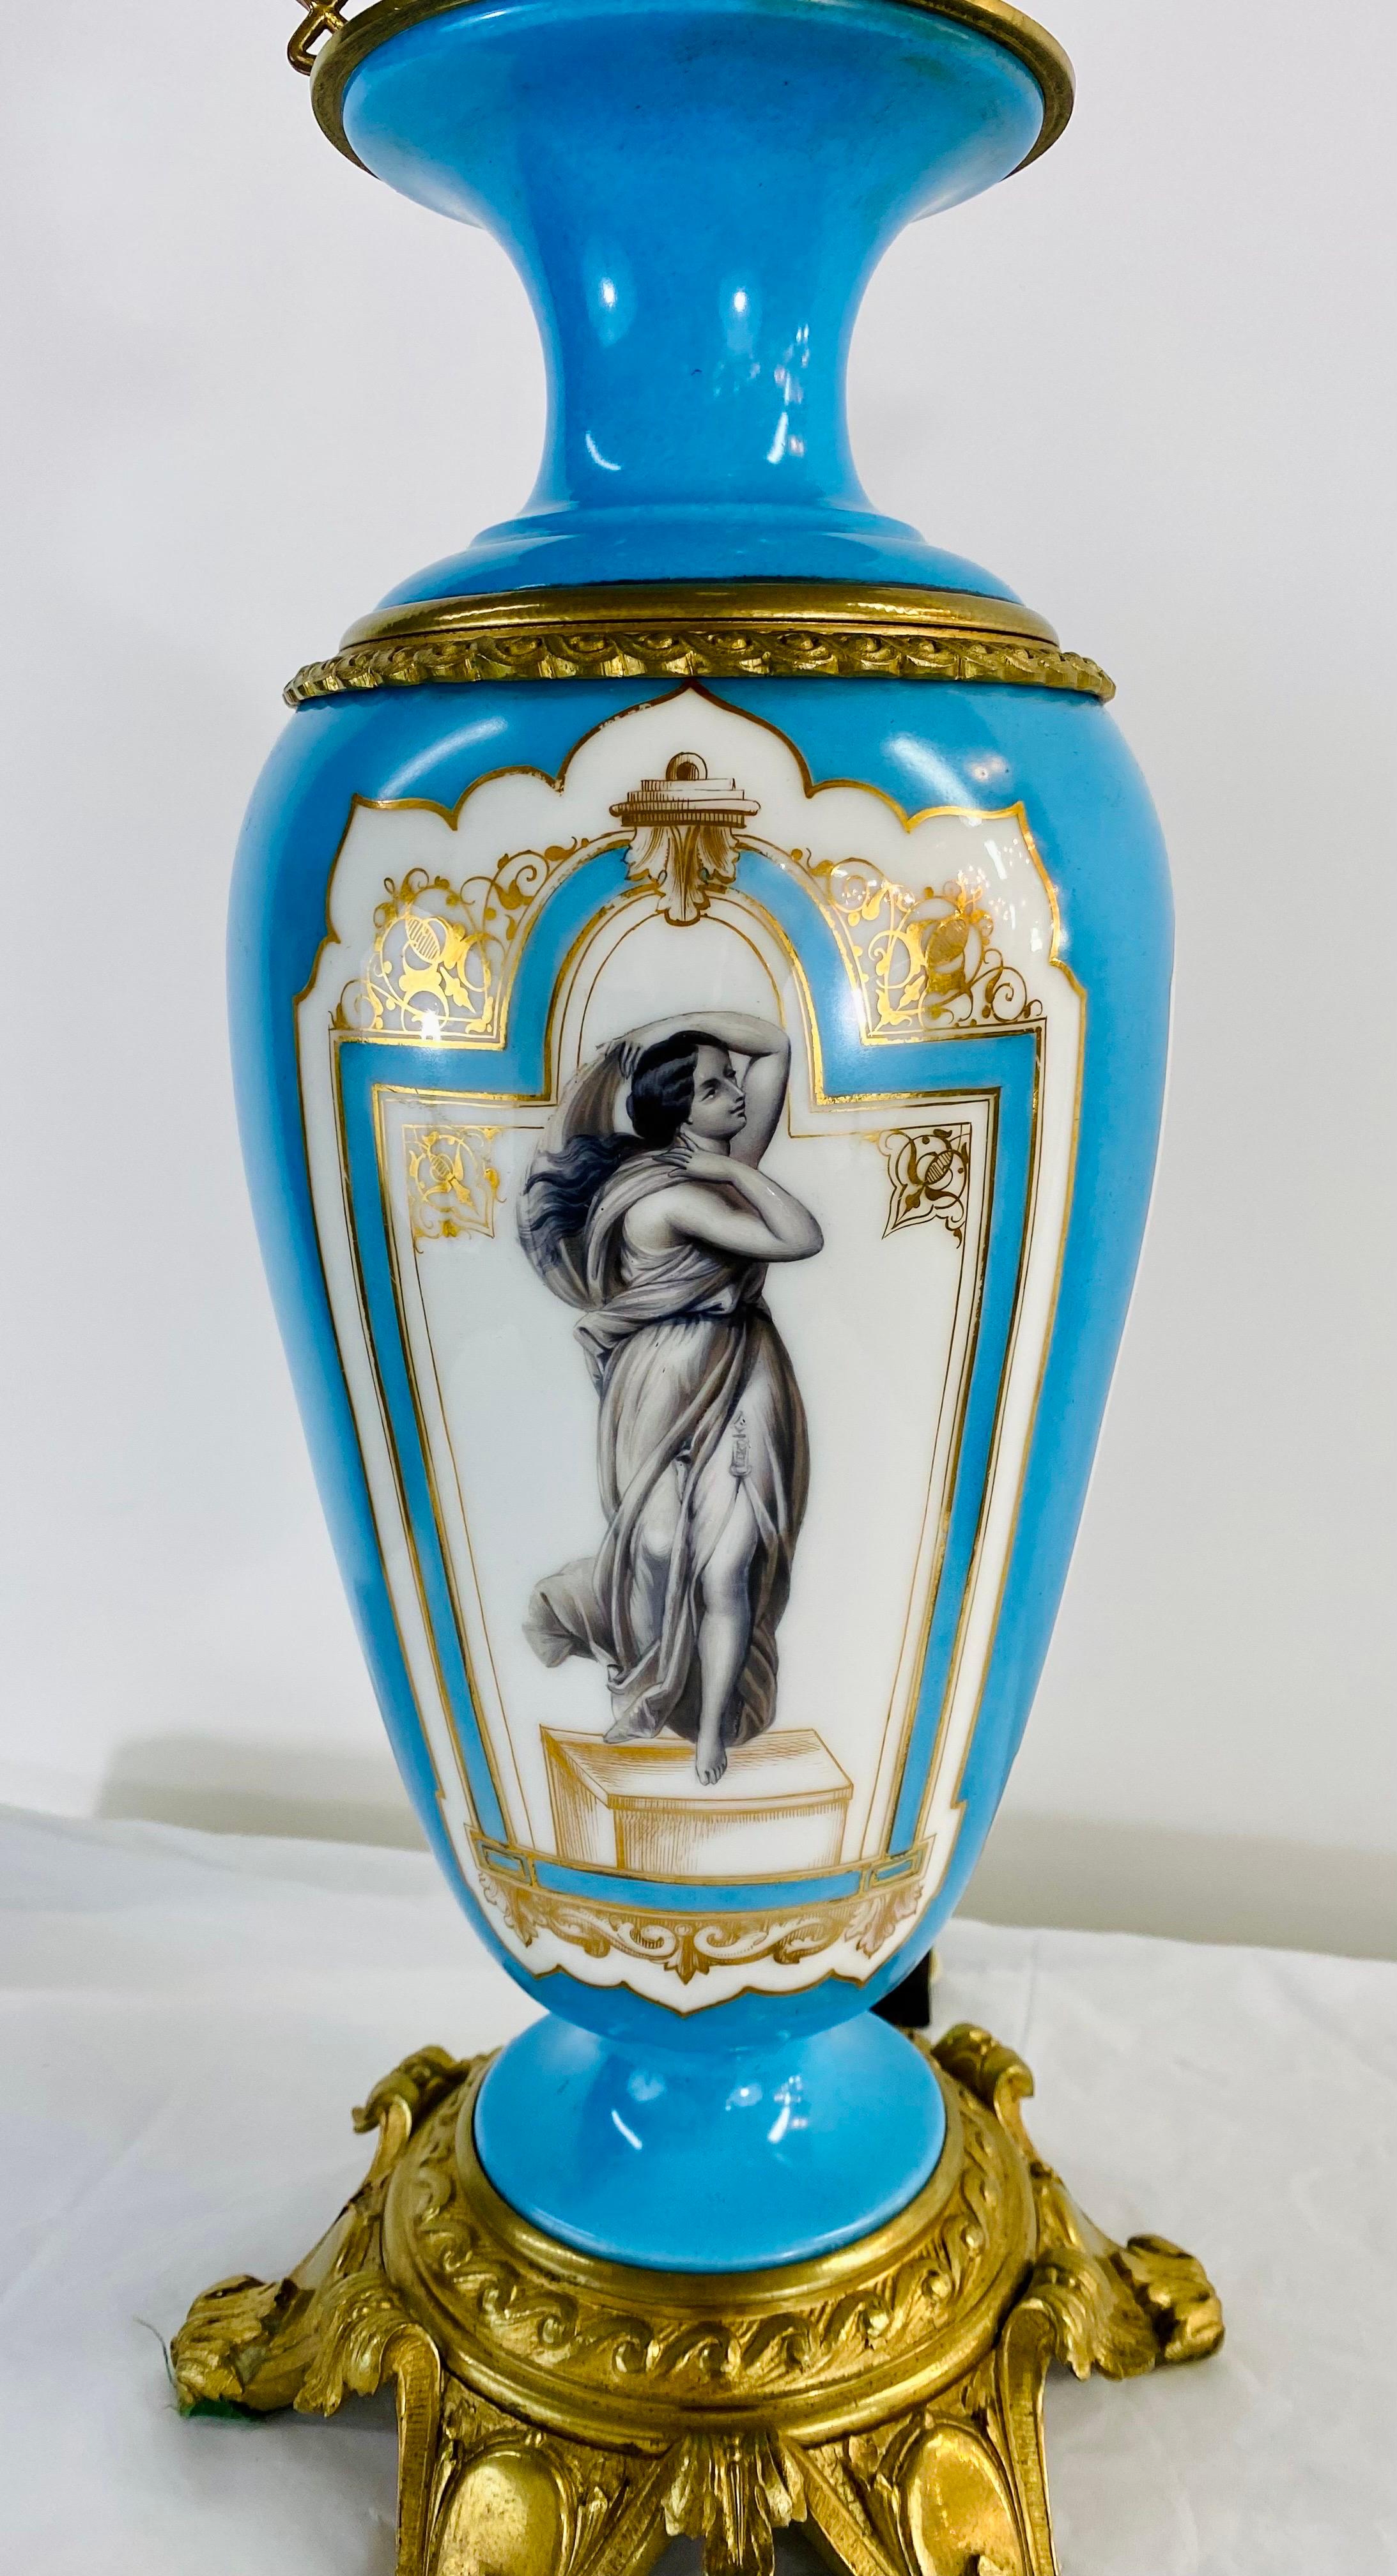 Ein Paar französische neoklassizistische Tischlampen aus dem frühen 20. Jahrhundert.  Die Lampen sind aus Porzellan und sind schön handbemalt mit einem Frauenporträt in der Mitte und  in Weiß und Blau gestrichen. Die eleganten Lampen sind in Messing